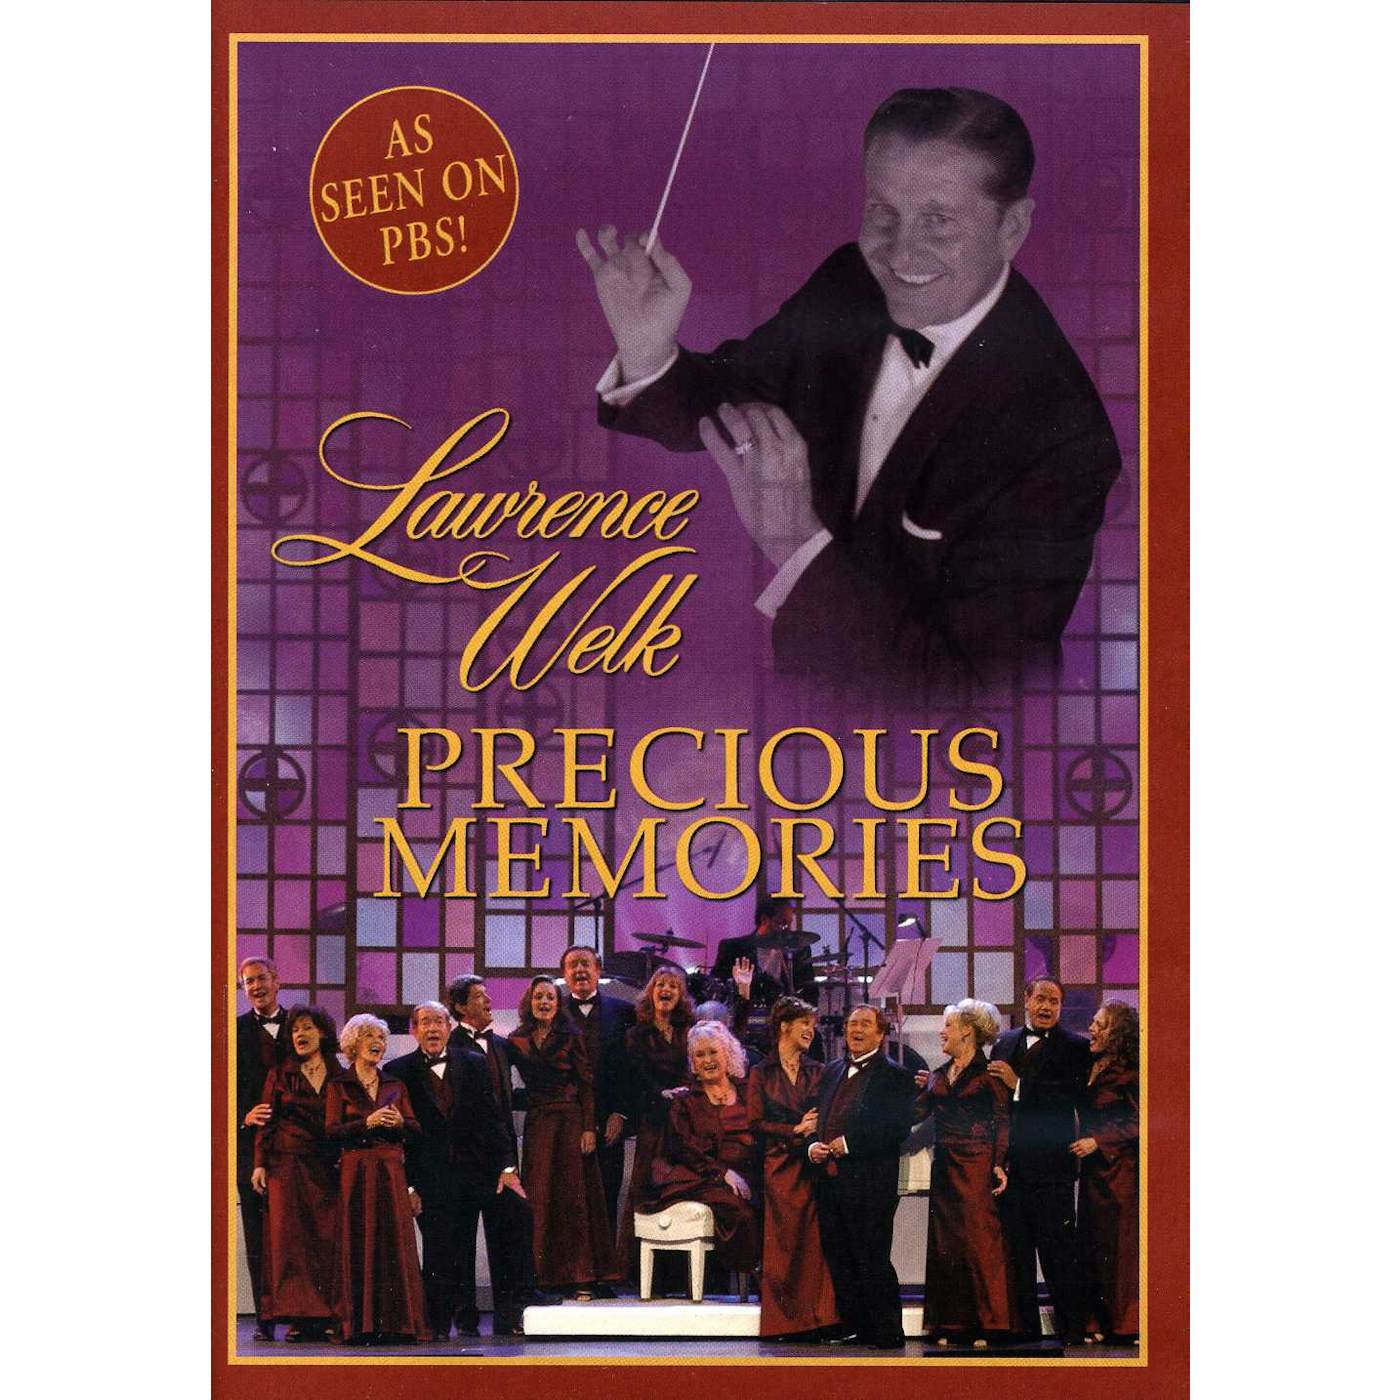 Lawrence Welk PRECIOUS MEMORIES DVD